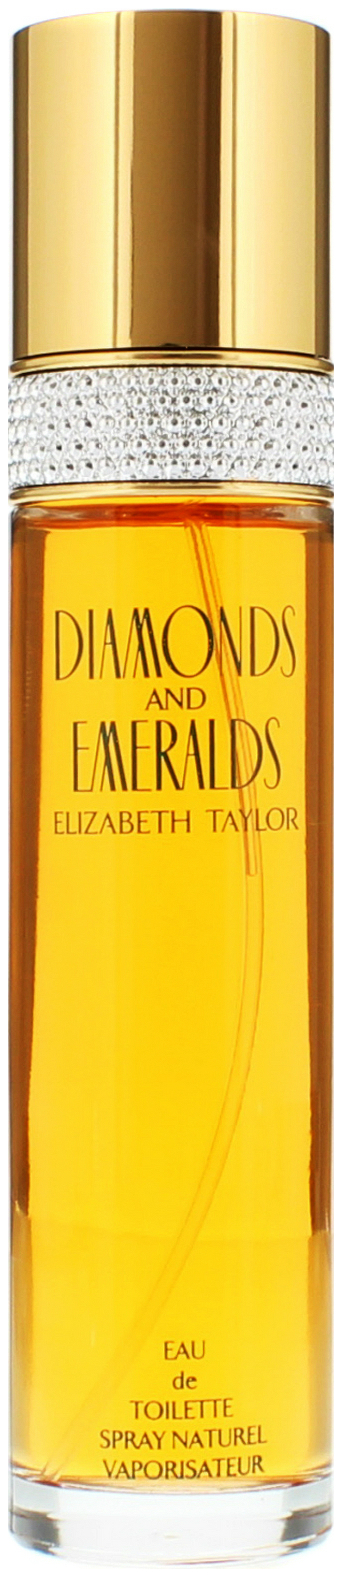 Туалетная вода Elizabeth Taylor Diamonds And Emeralds 100 мл converse chuck taylor all star oaks каньон закат